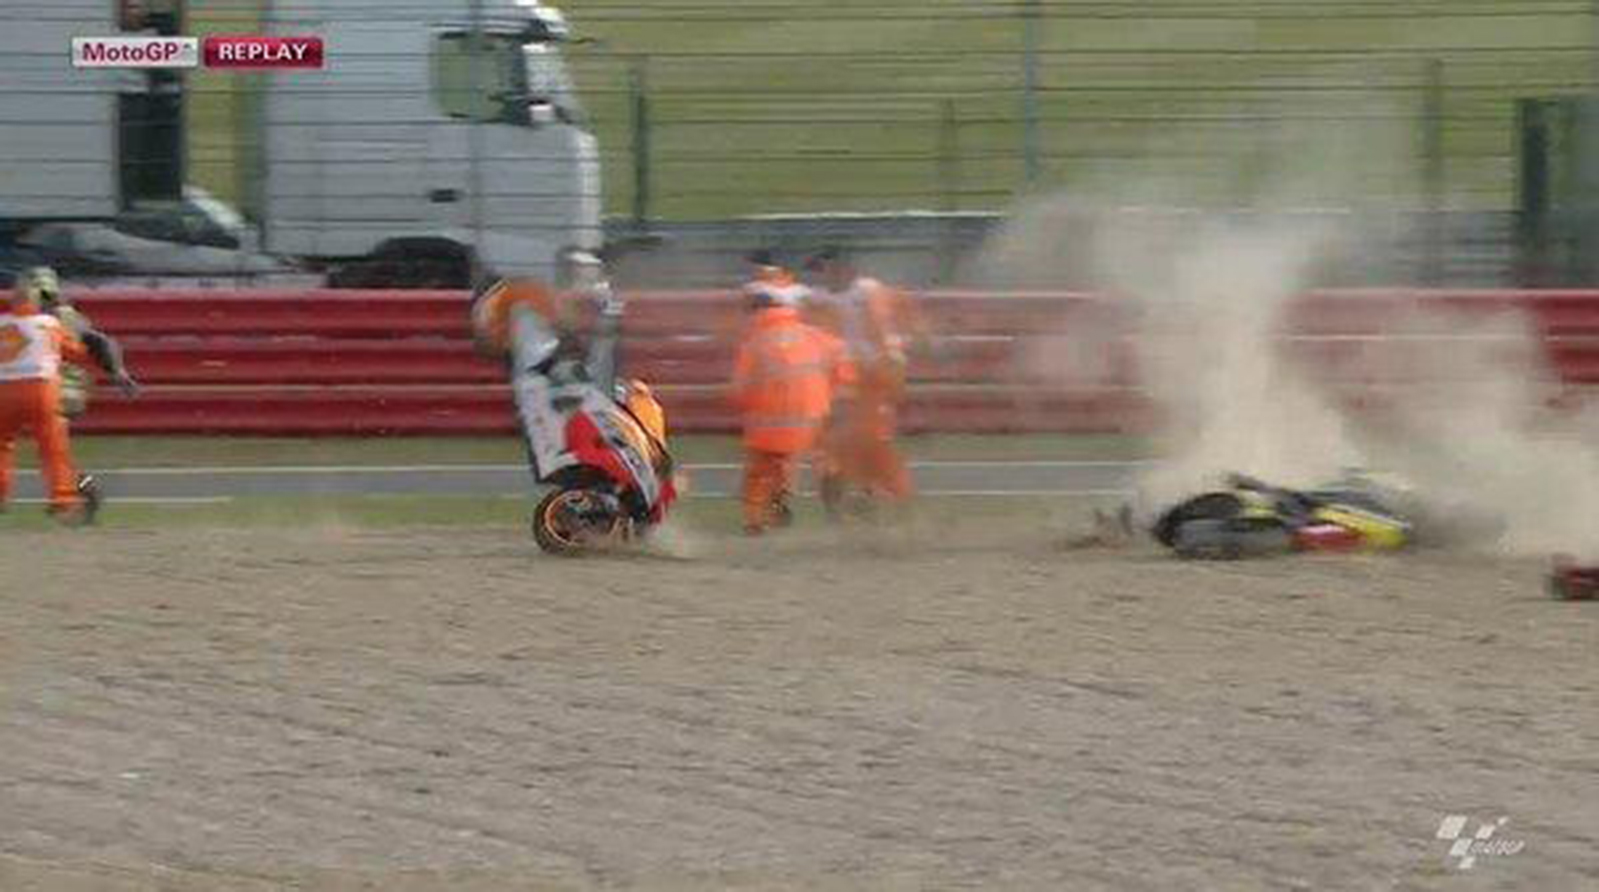 La caduta di Marquez nel warm up, con la sua Honda che vola nella via di fuga, colpisce la Yamaha di Crutchlow ferma nella sabbia e sfiora i commissari e il pilota inglese che riescono a scappare in tempo. MotoGP.com